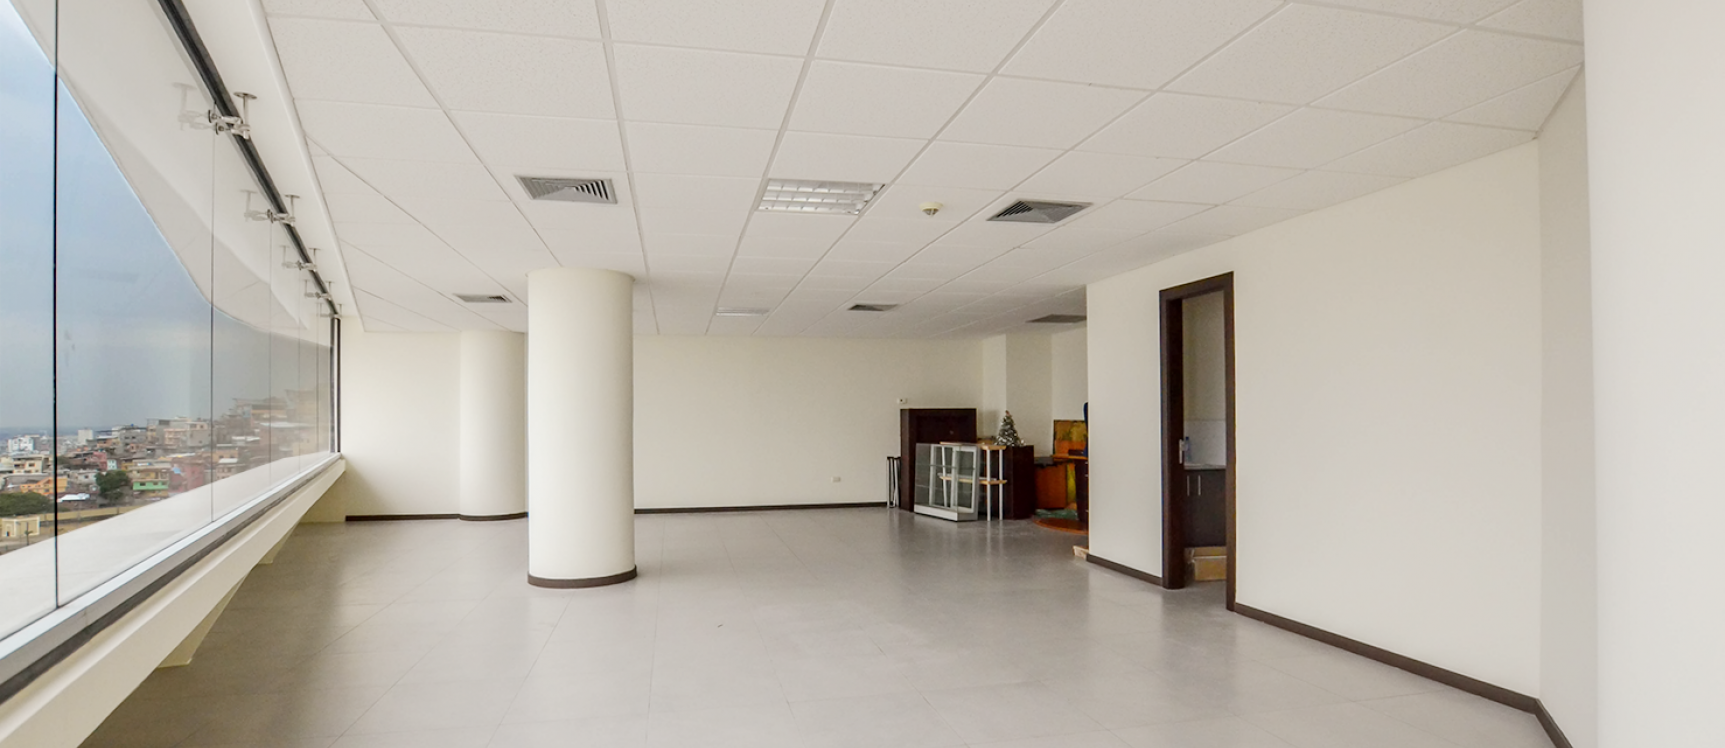 GeoBienes - Oficina en alquiler en edificio The Point sector centro de Guayaquil - Plusvalia Guayaquil Casas de venta y alquiler Inmobiliaria Ecuador